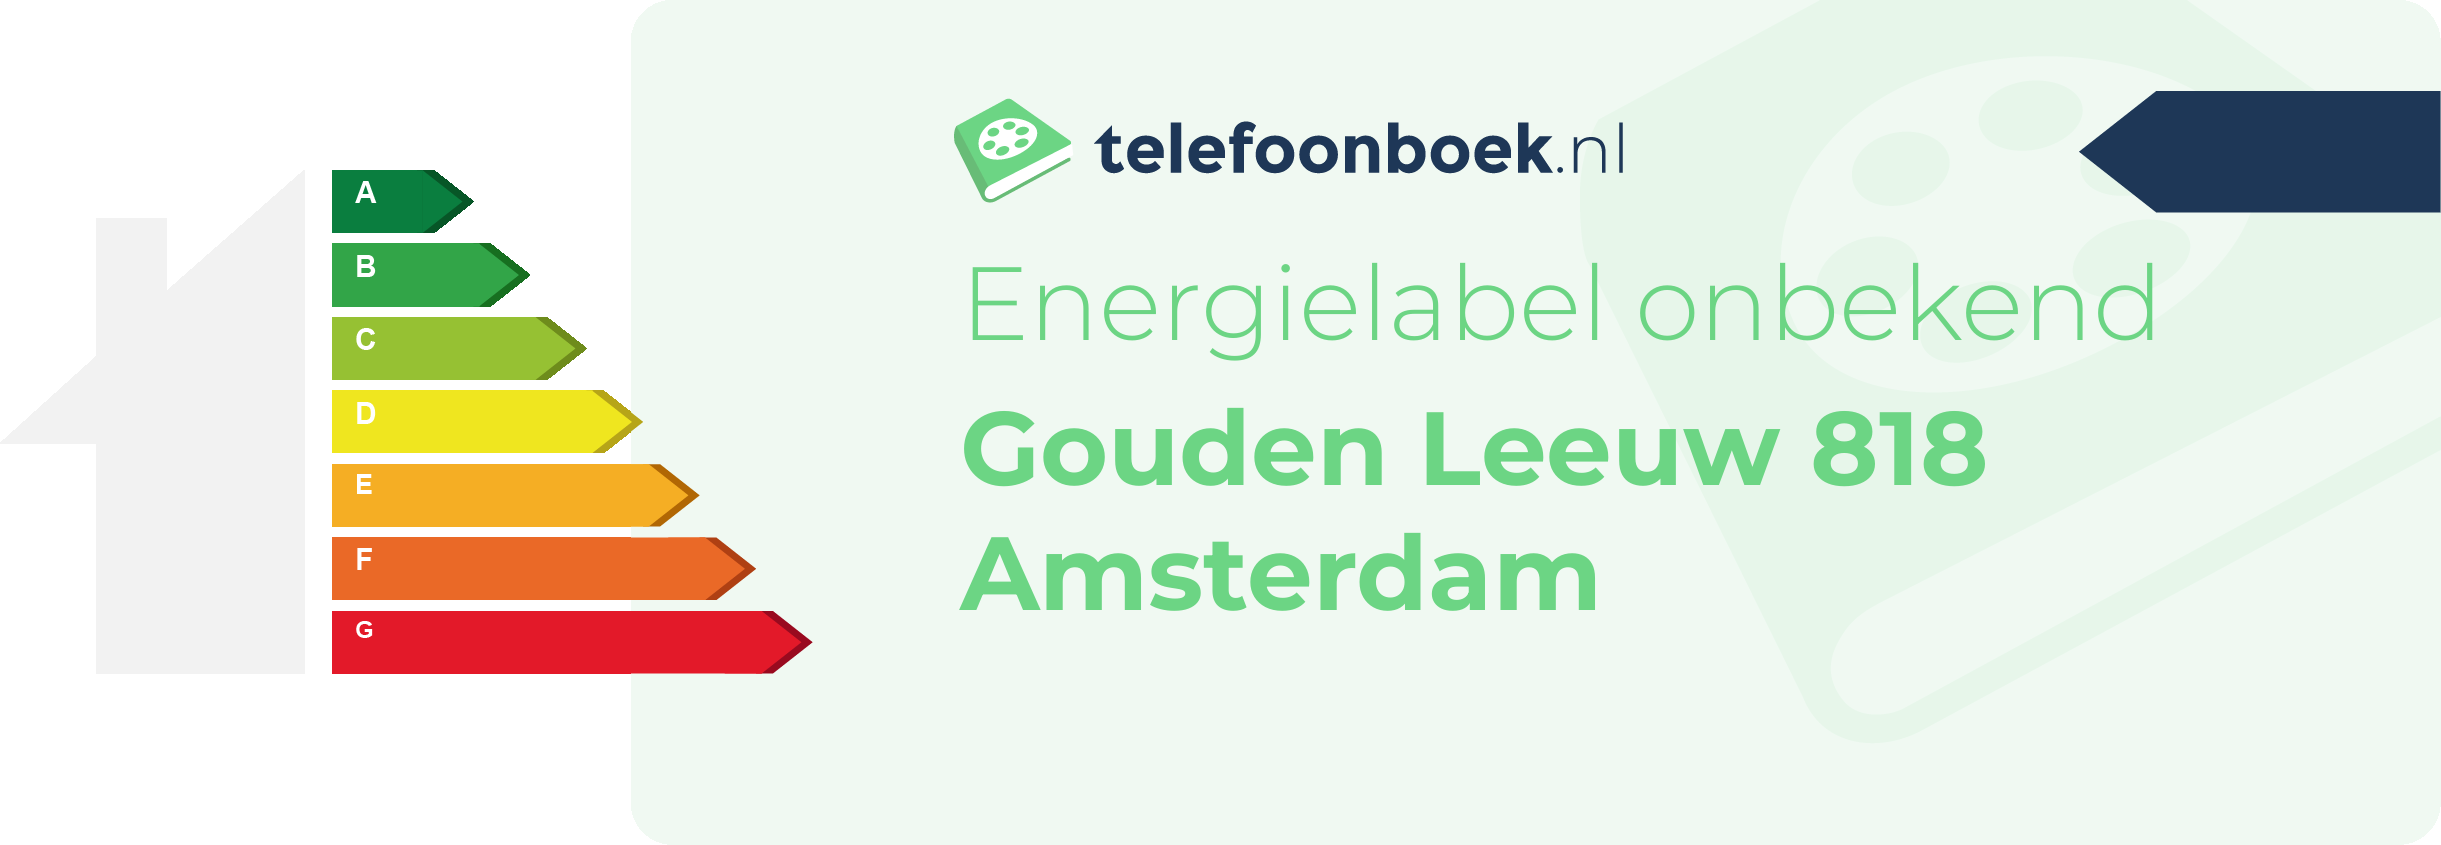 Energielabel Gouden Leeuw 818 Amsterdam